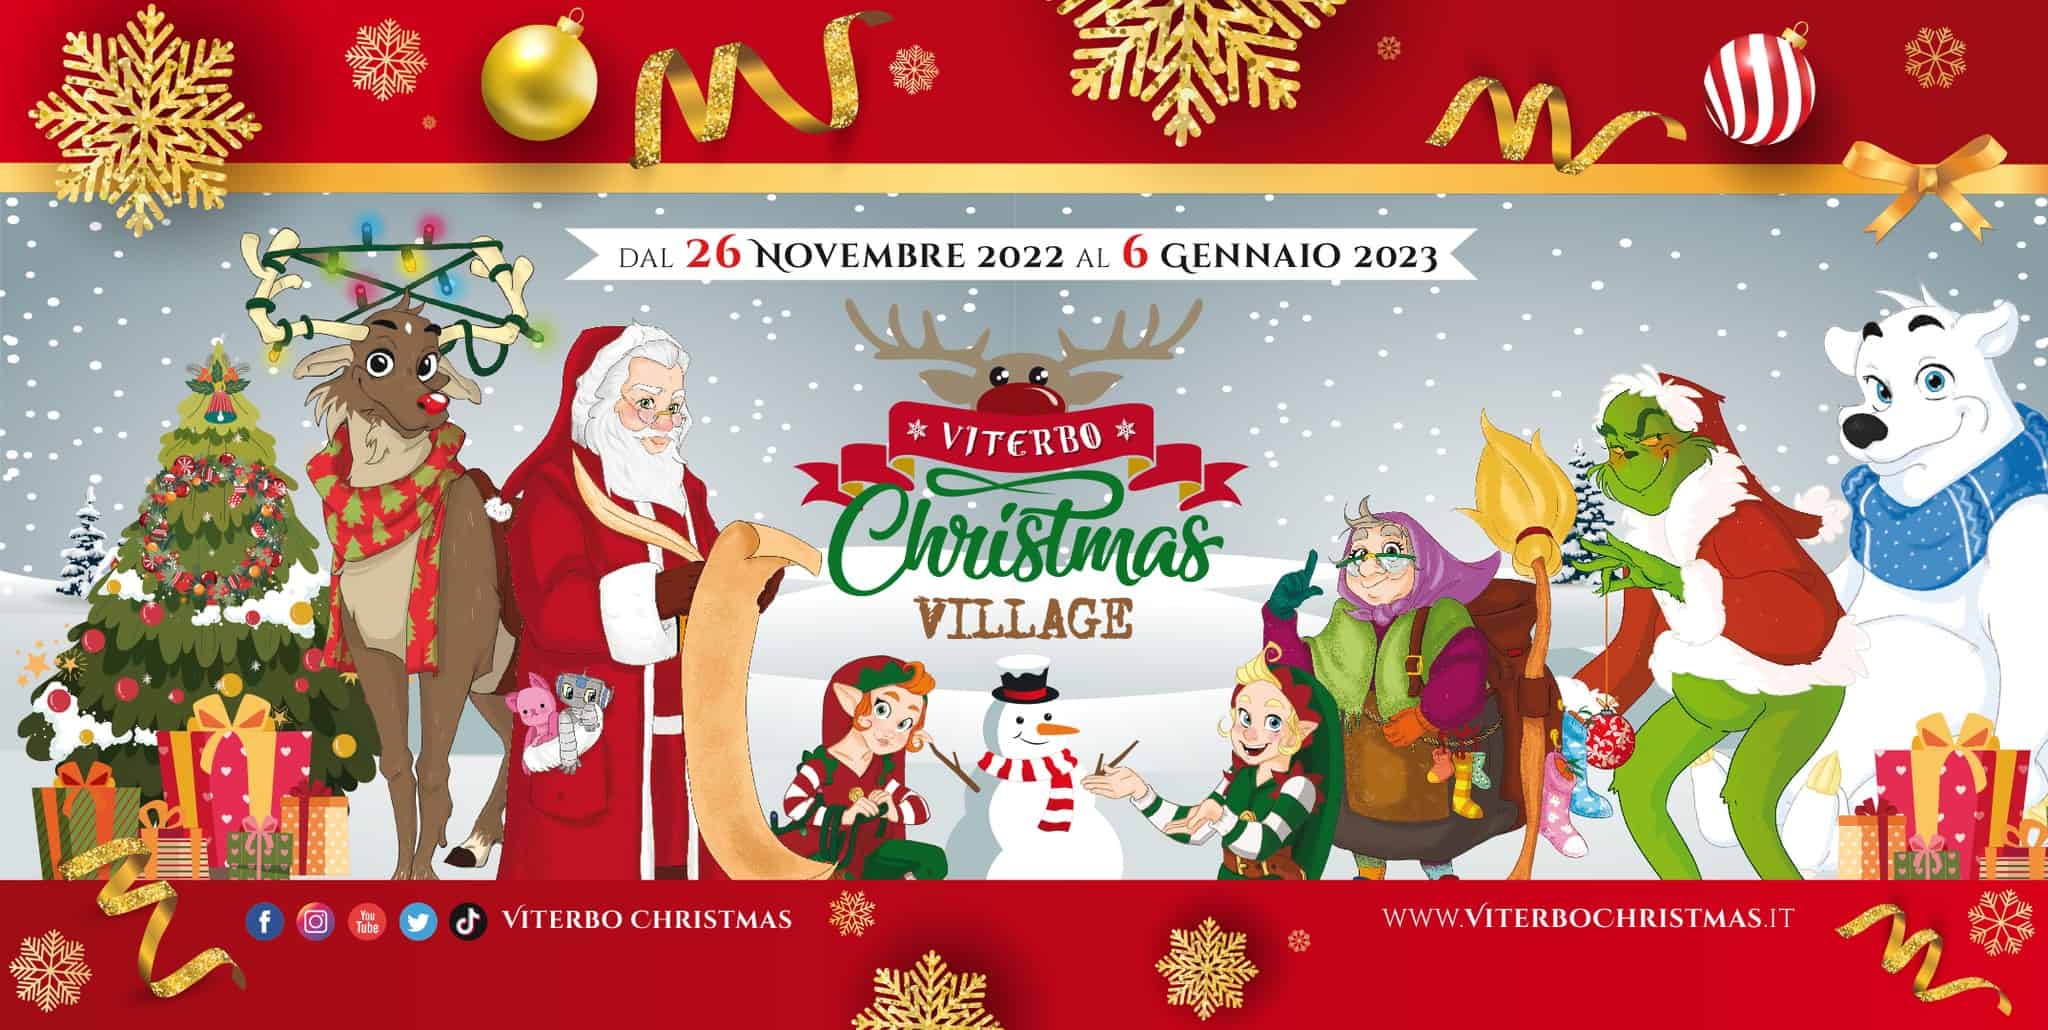 viterbo christmas - Viterbo Christmas Village : la magia del Natale nel Centro storico di Viterbo